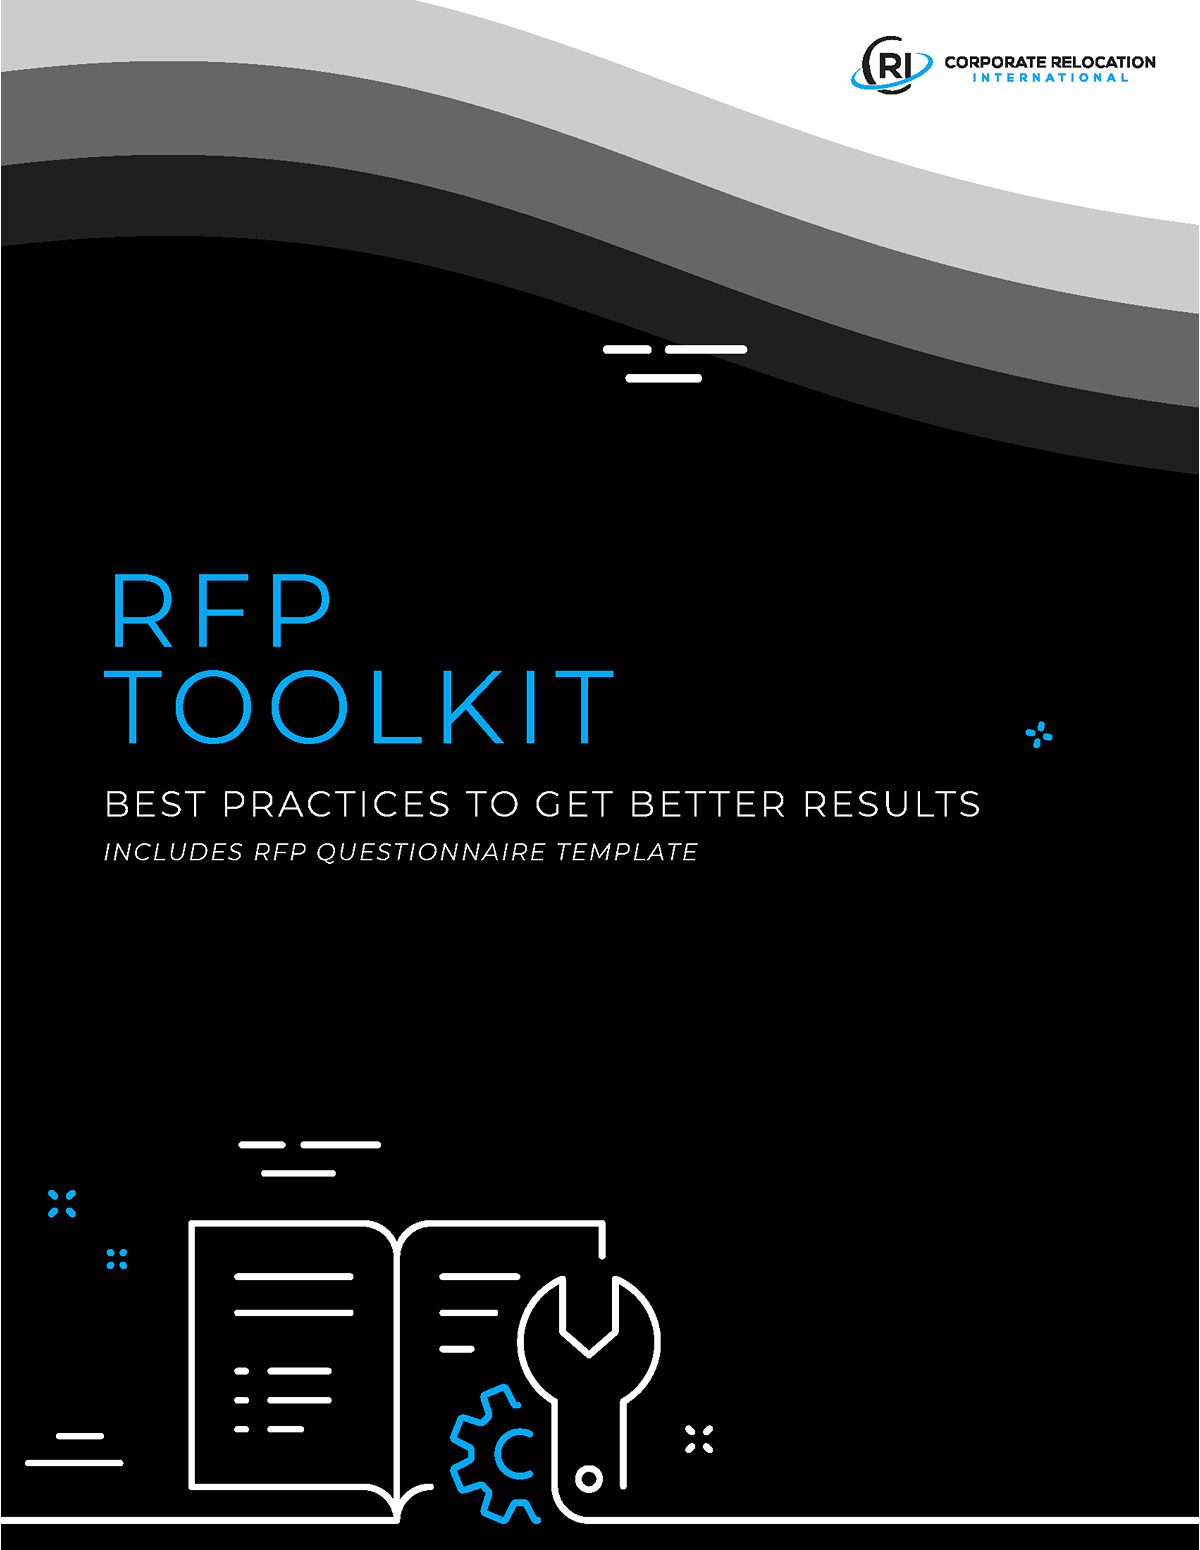 RFP Toolkit